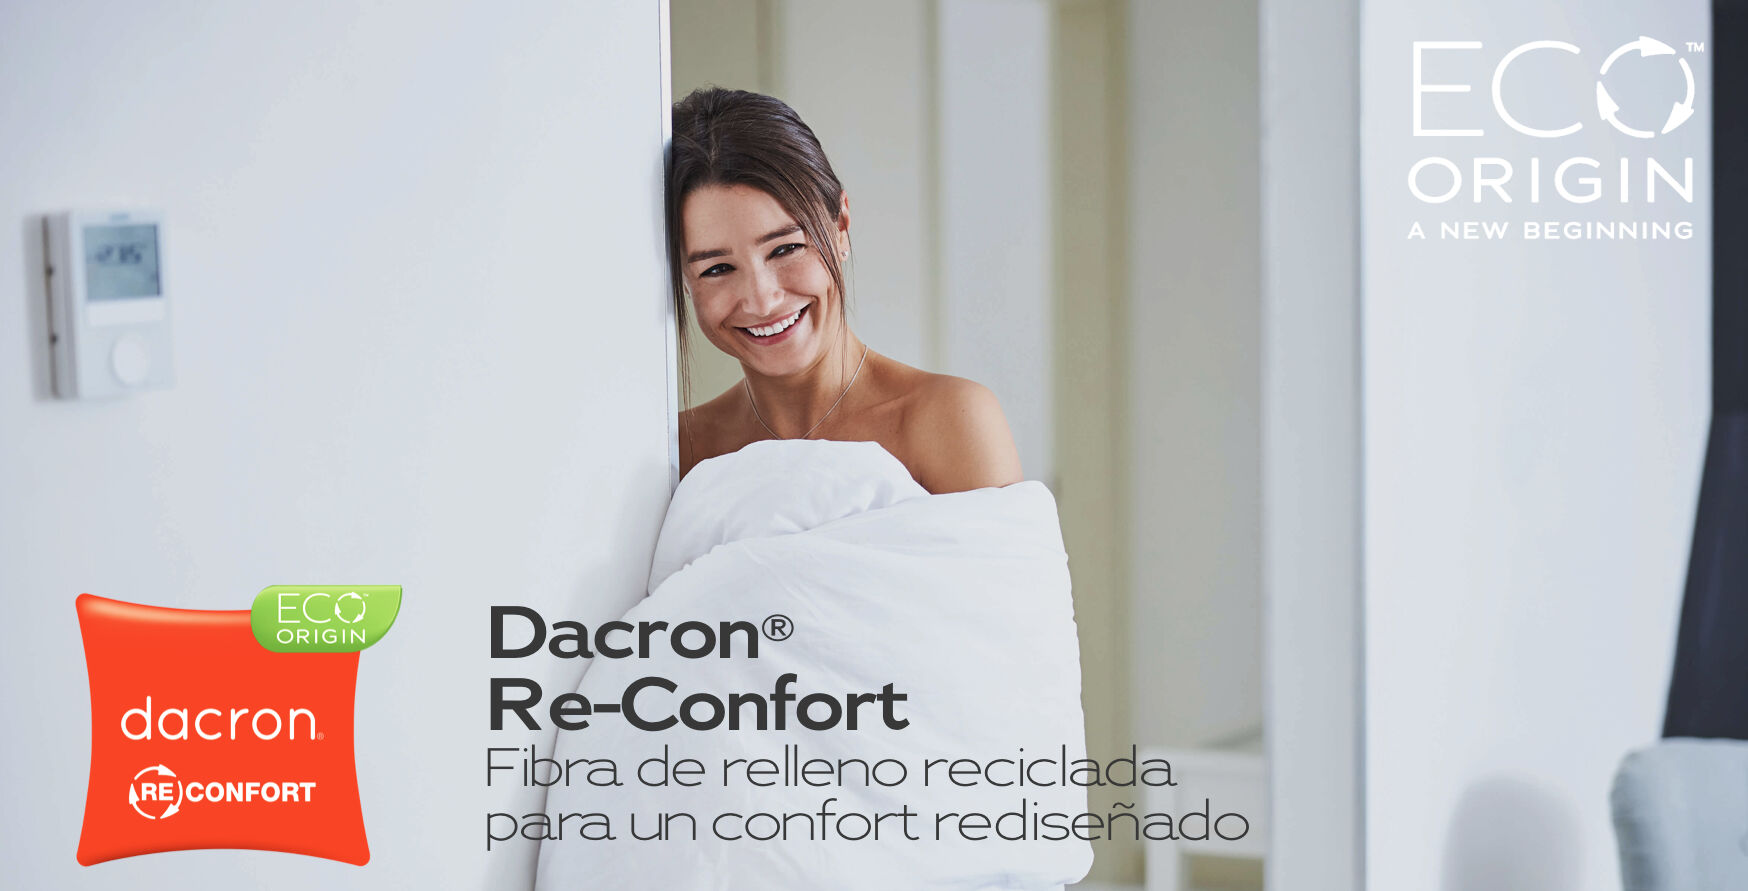 Dacron® Re-Confort